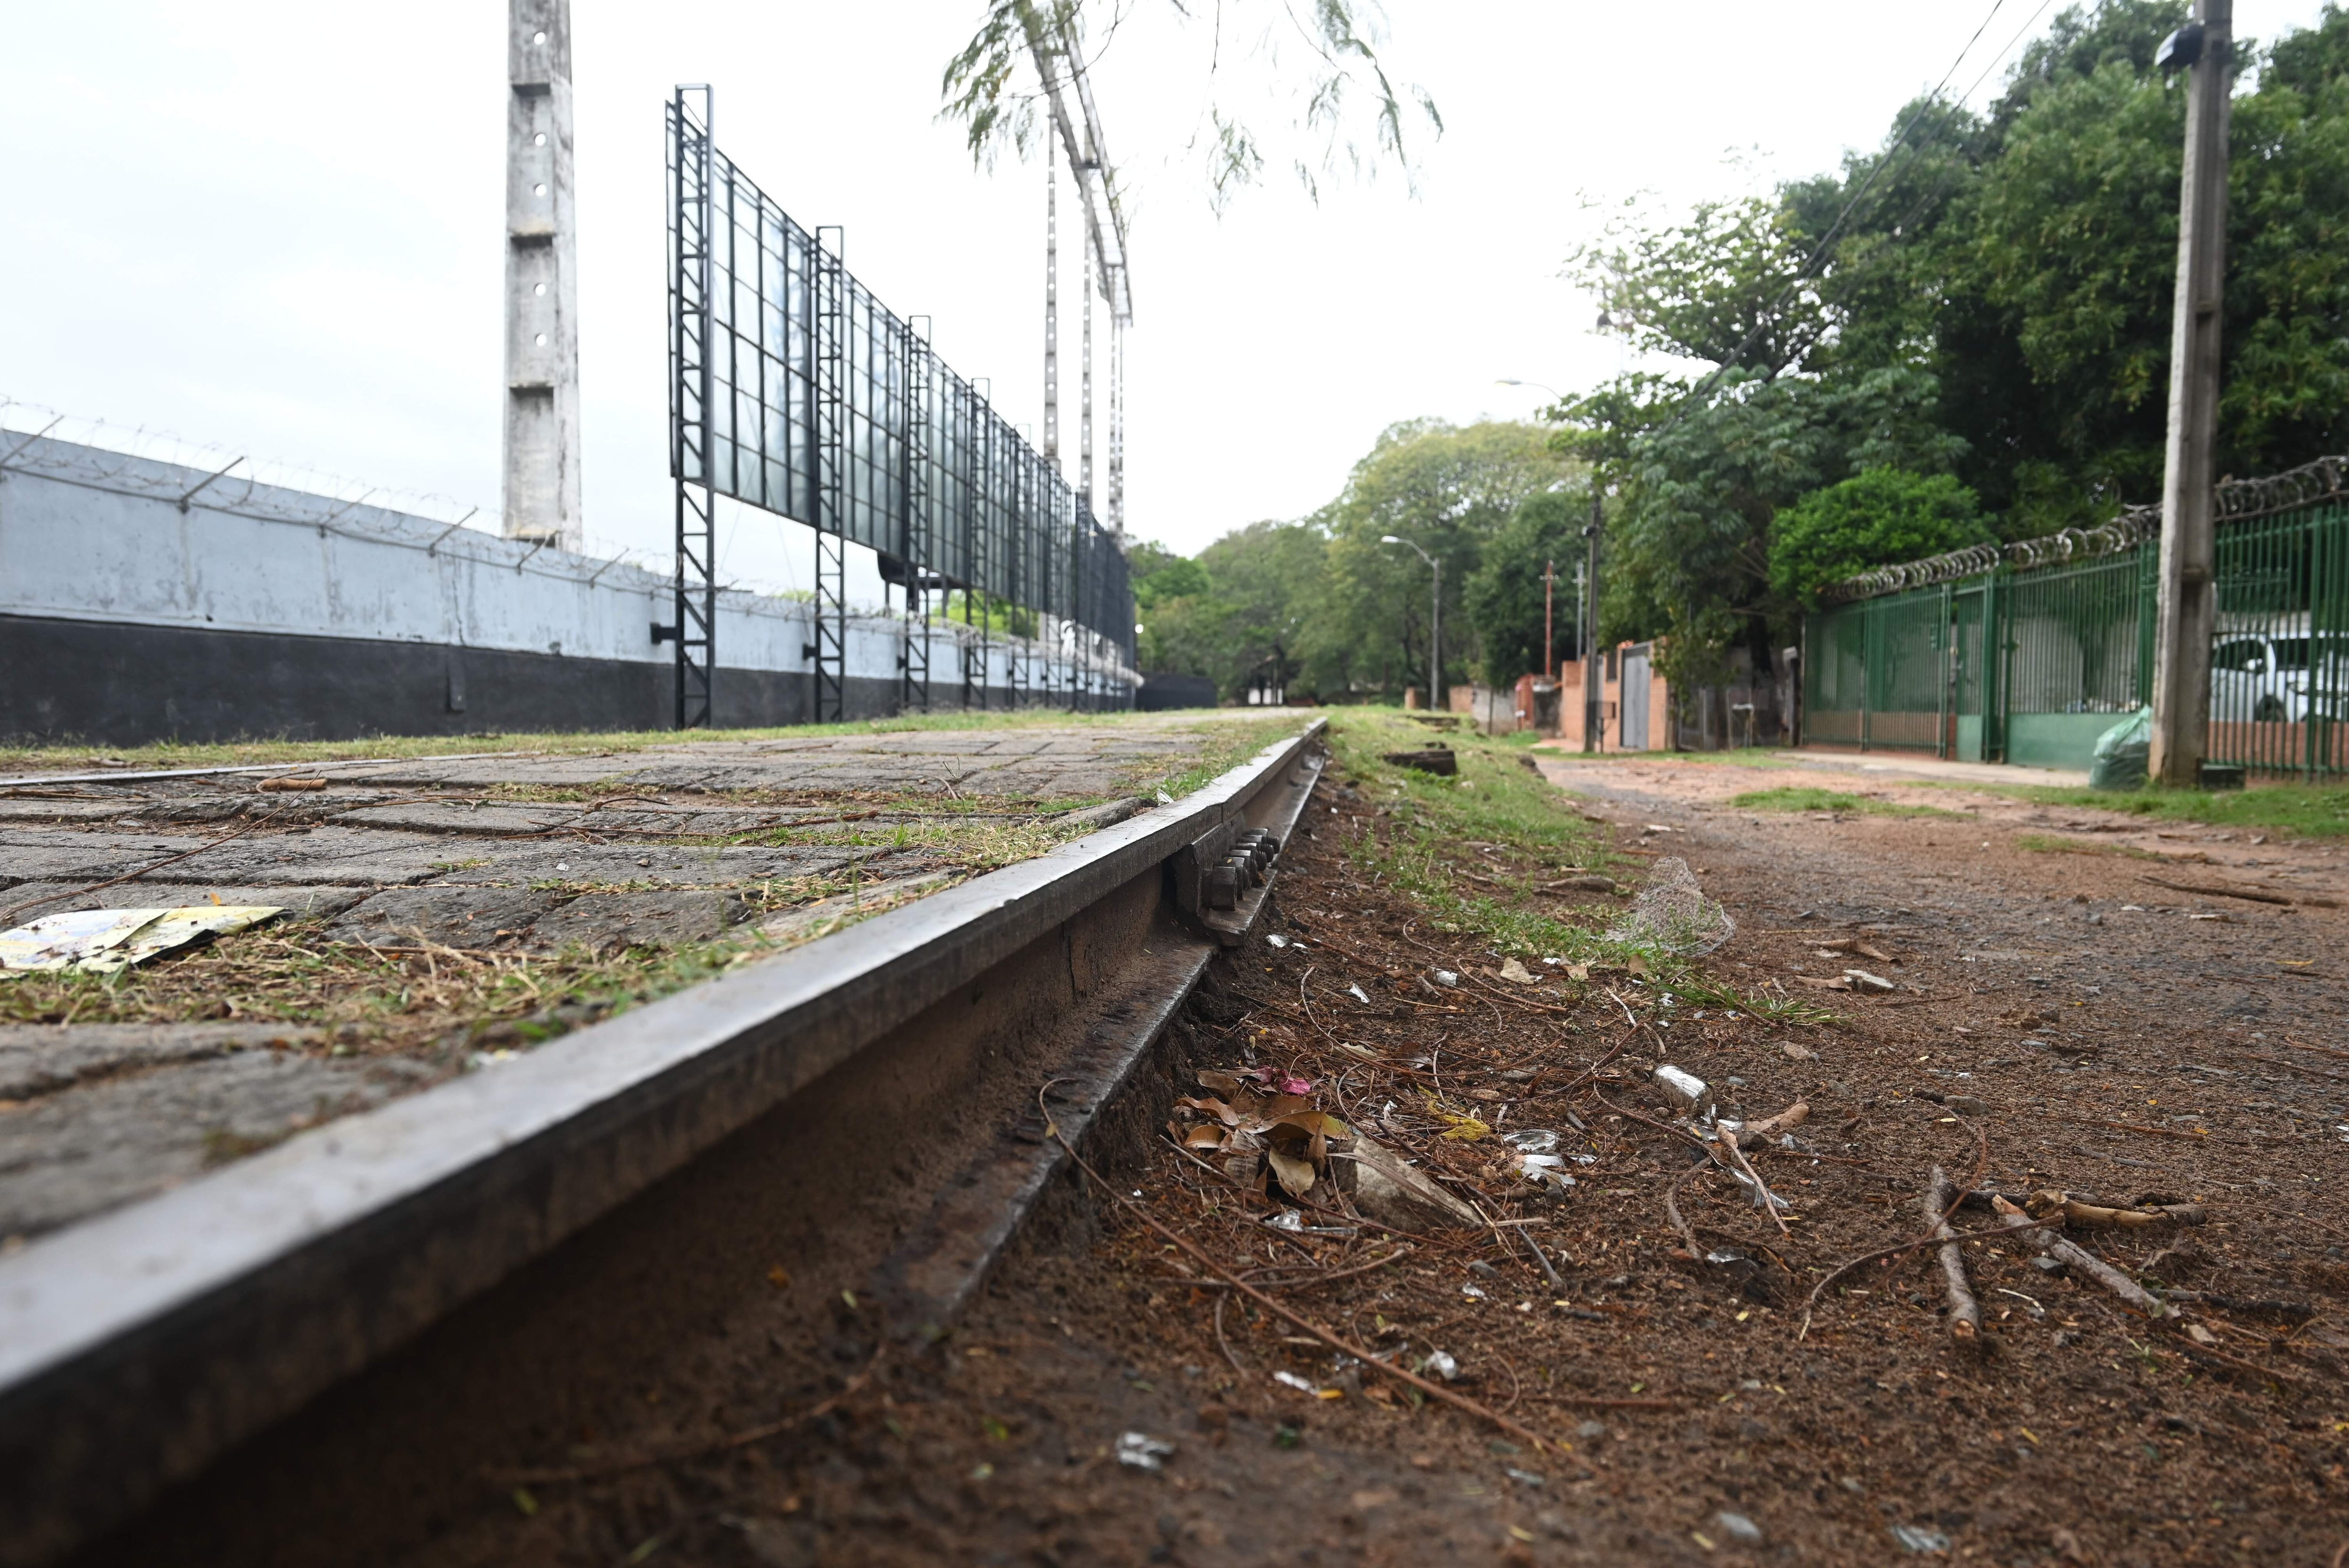 El Club Libertad se ubica a escasos metros de las vías del tren, y los responsables del mismo no confirmaron notificación de los planes de implementación del tren de cercanía.